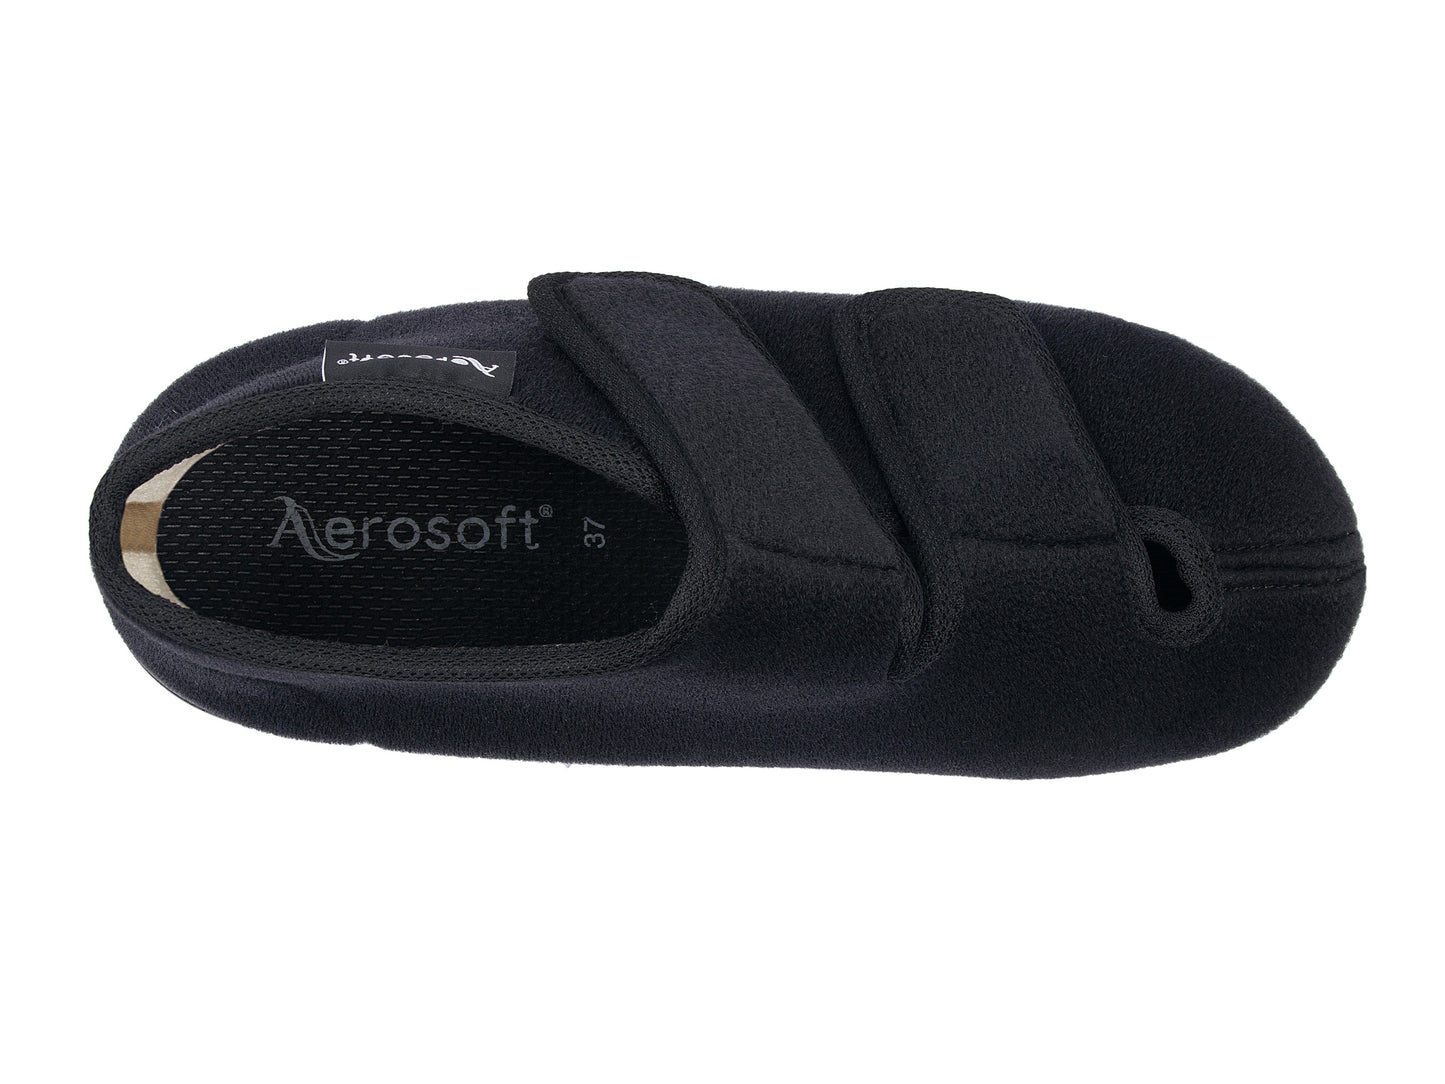 Aerosoft Klett-Stiefel Stretch 13, für Damen und Herren